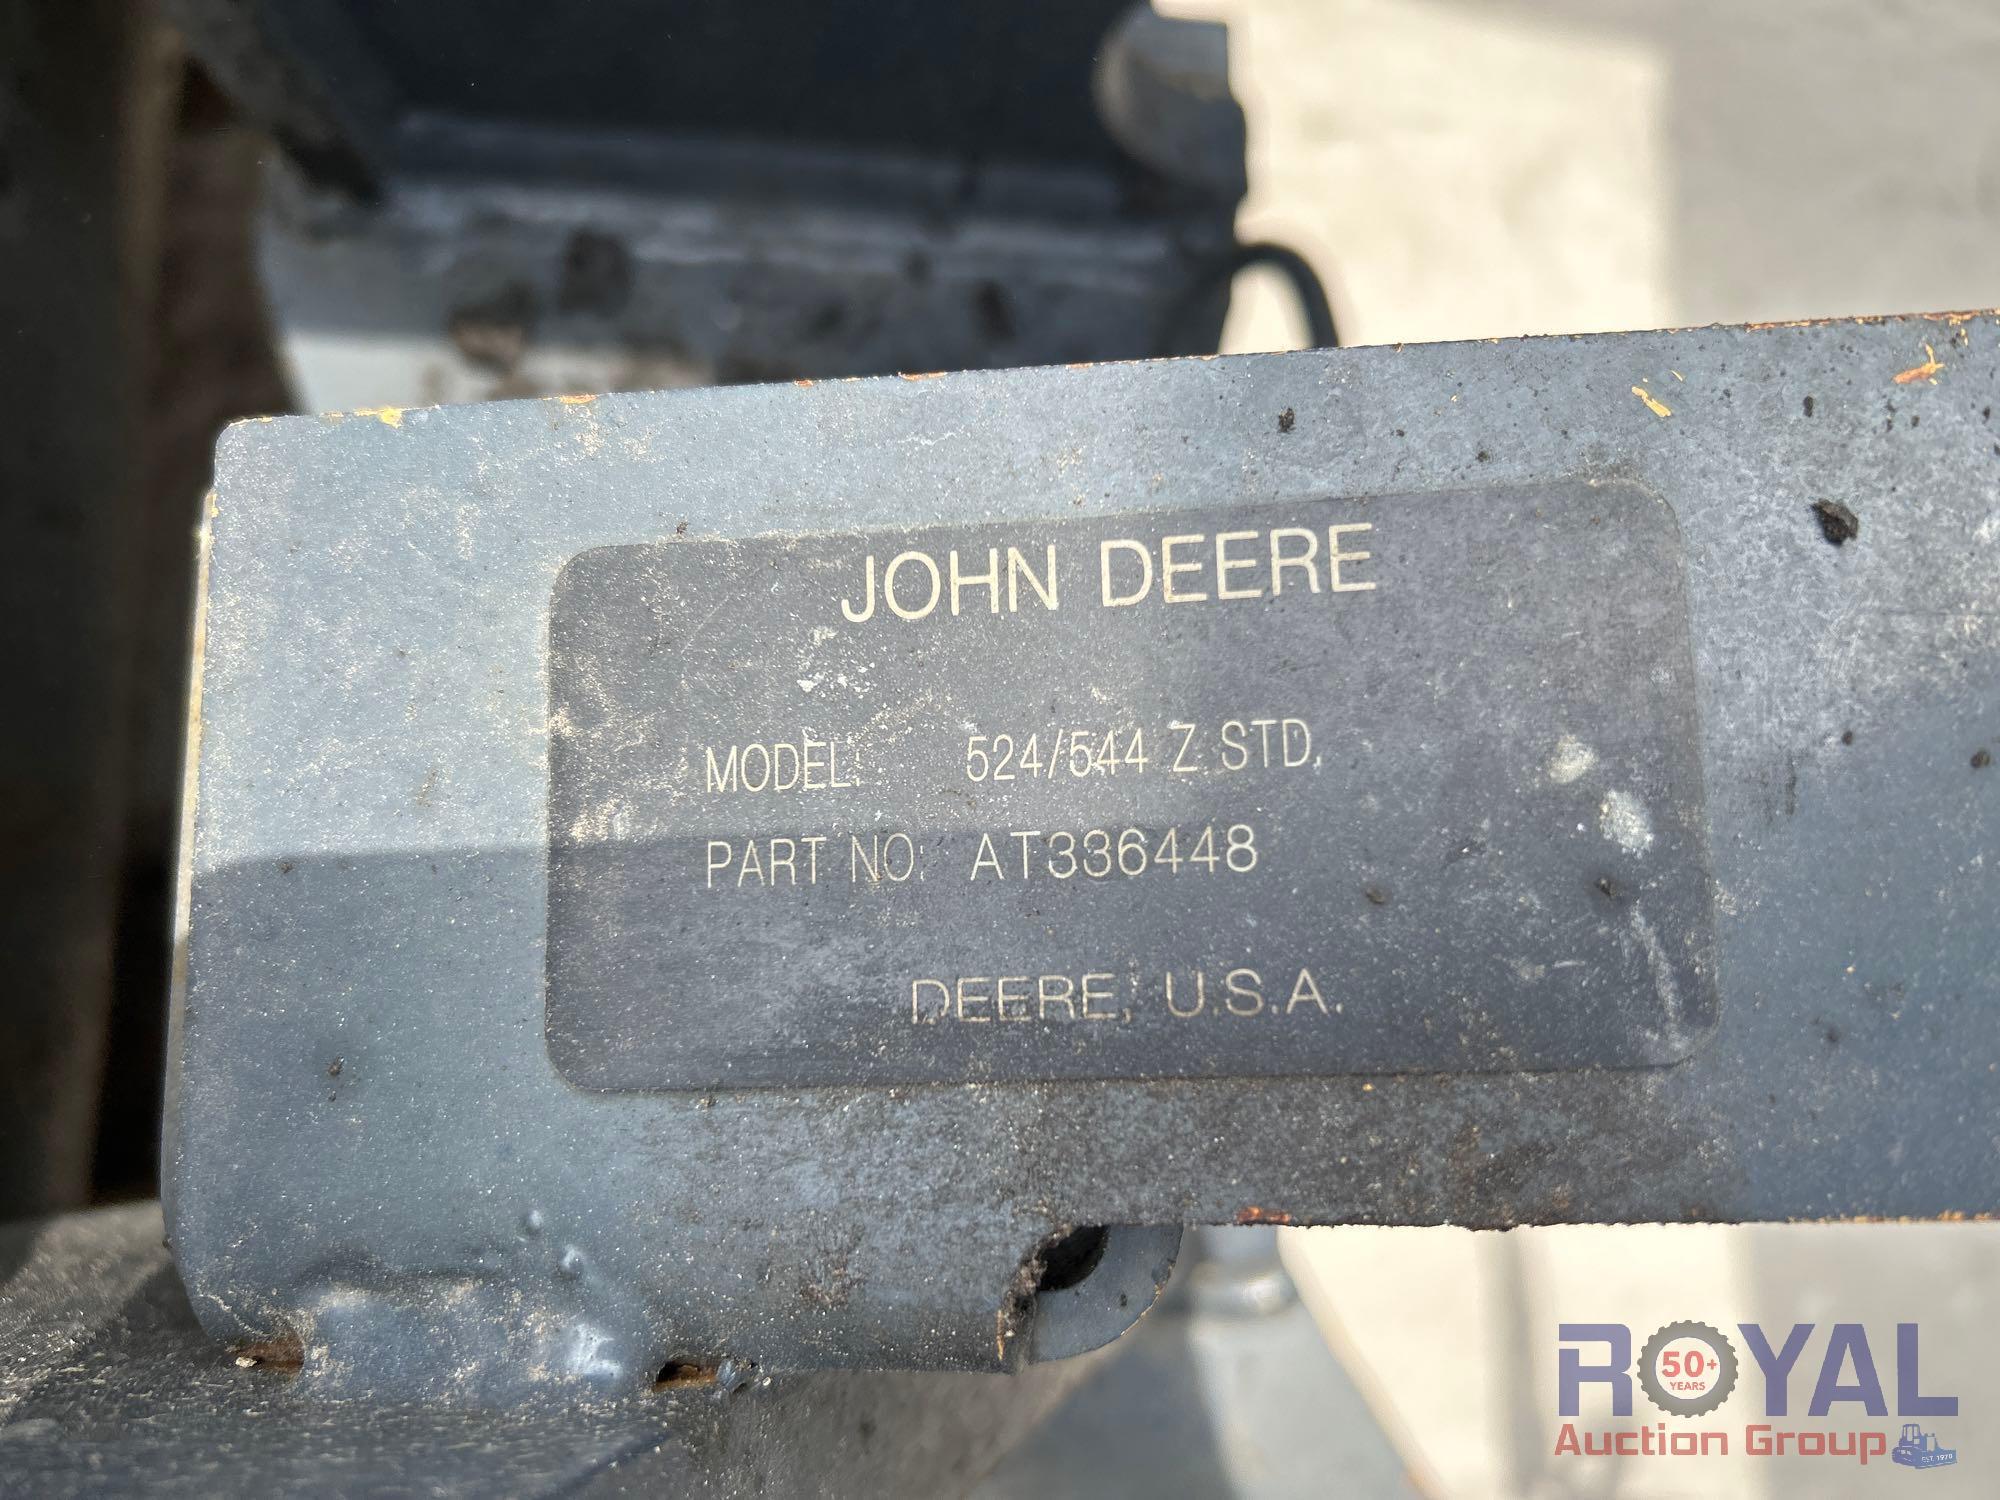 2016 John Deere 544K 4x4 Articulated Wheel Loader